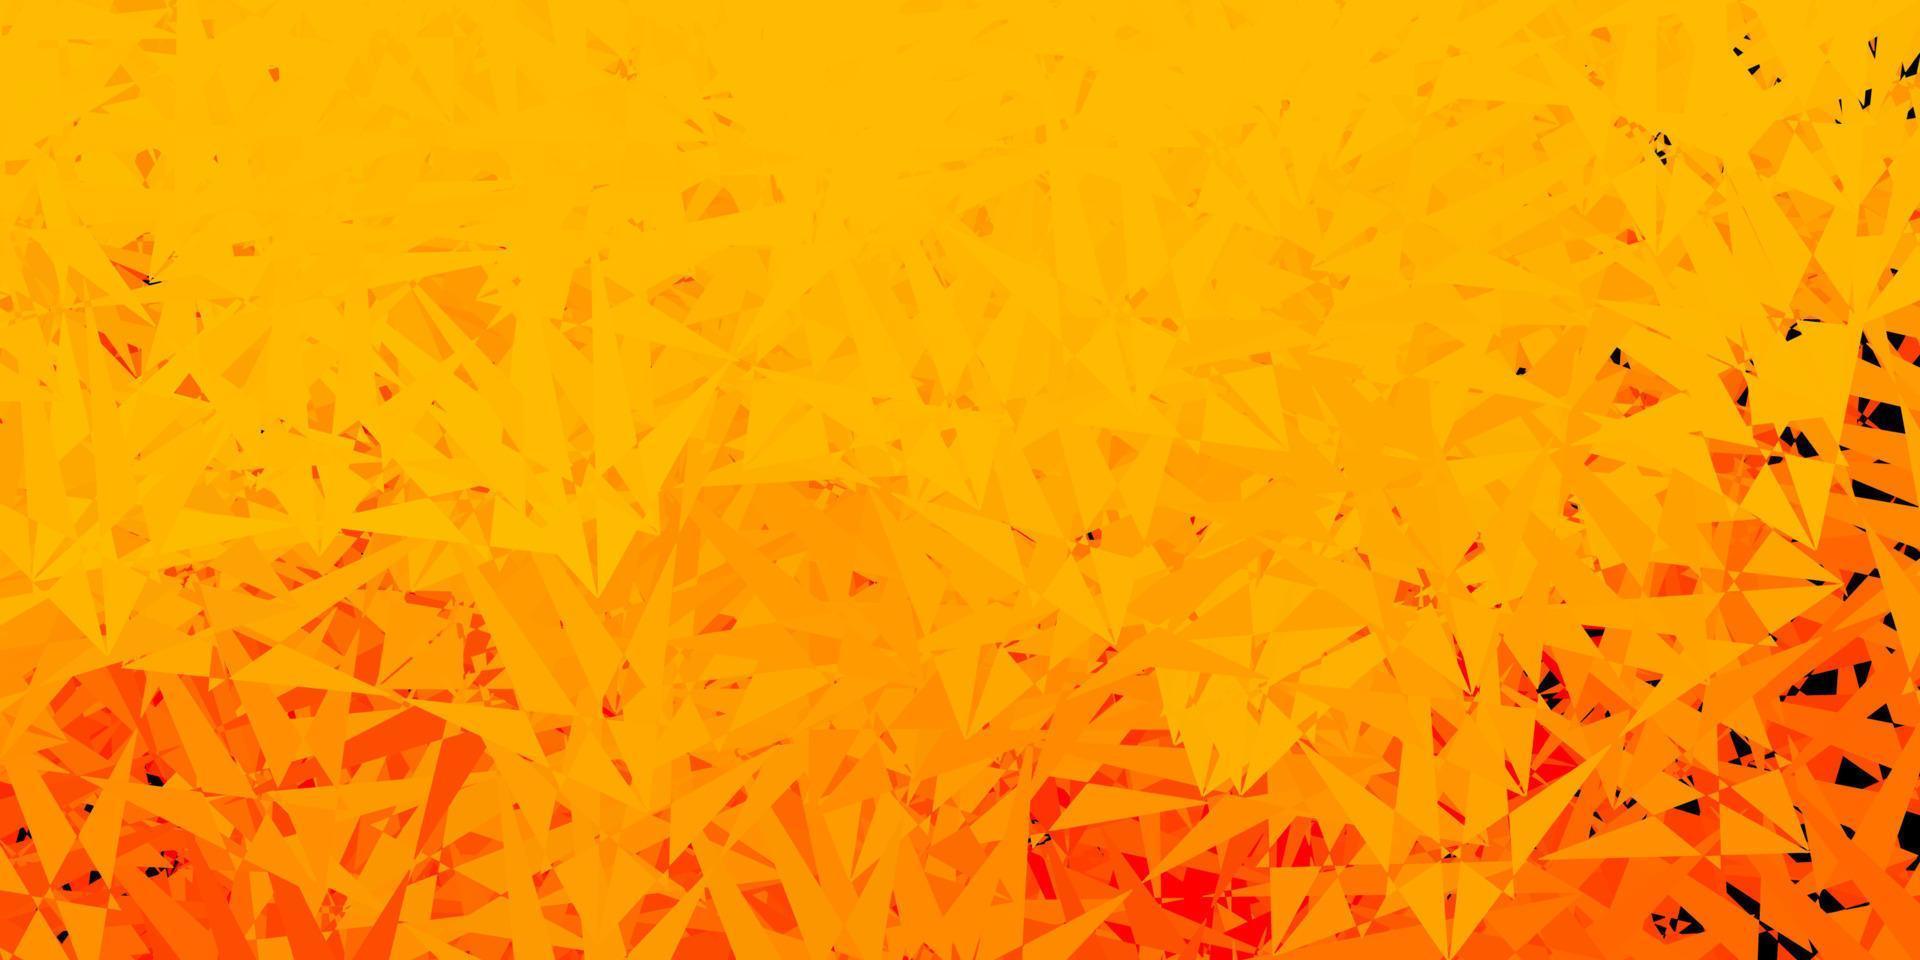 textura de vector naranja claro con triángulos al azar.